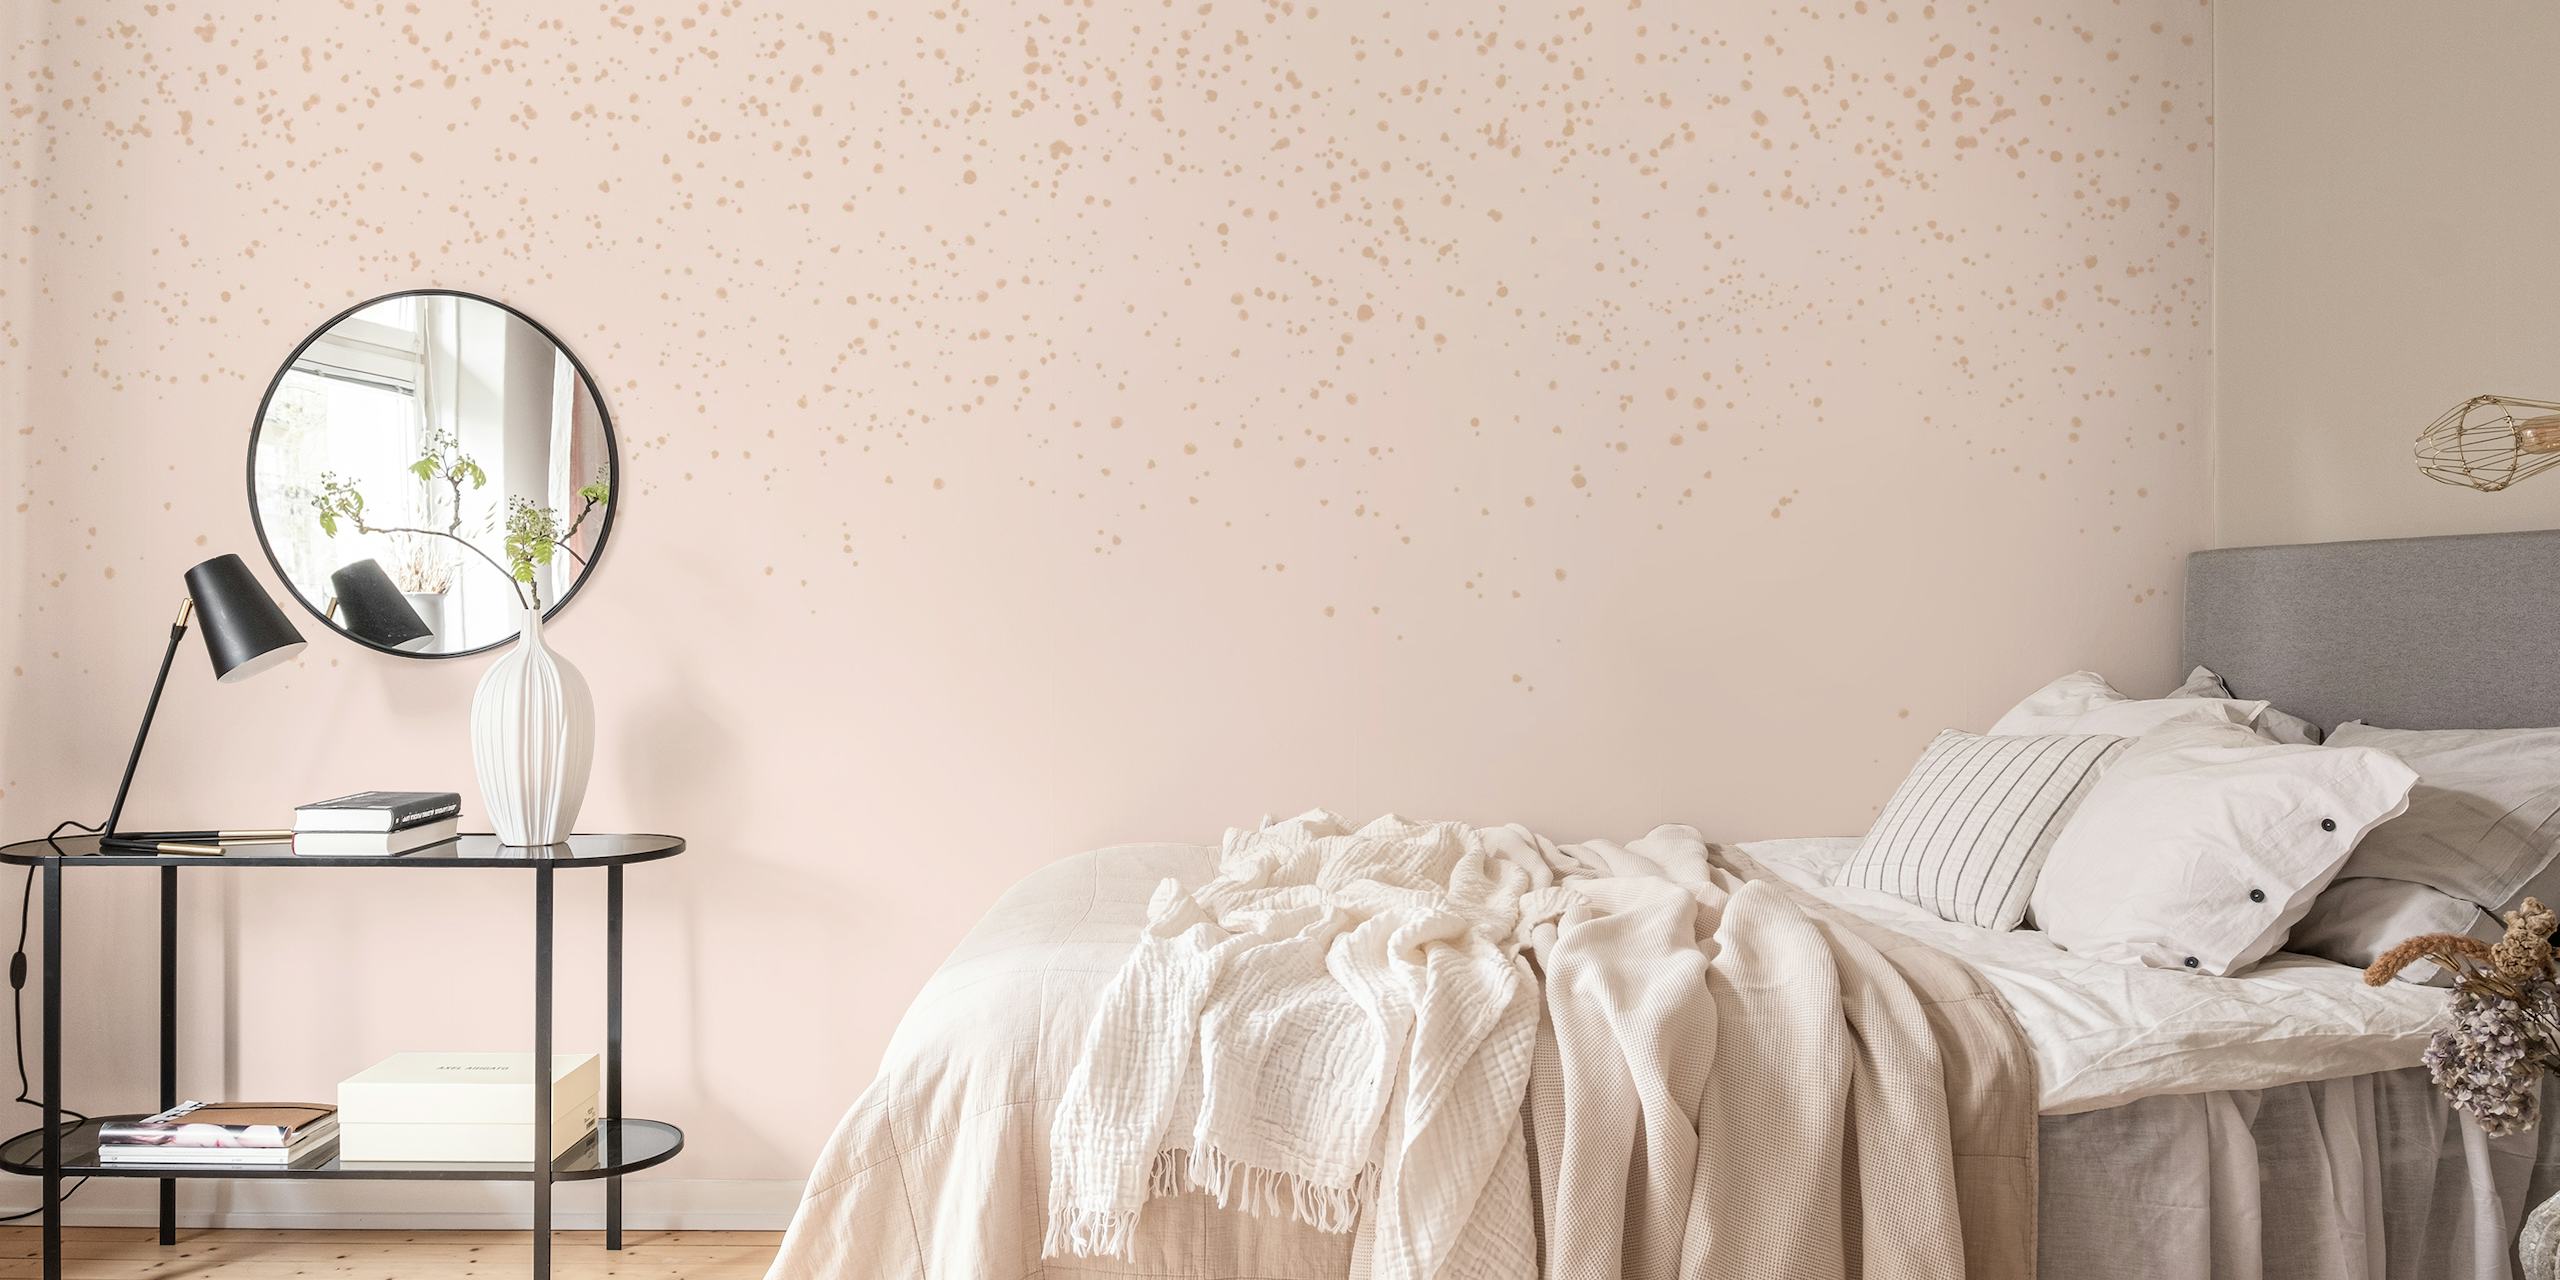 Et blødt tekstureret pink blush, beige og guld vægmaleri.